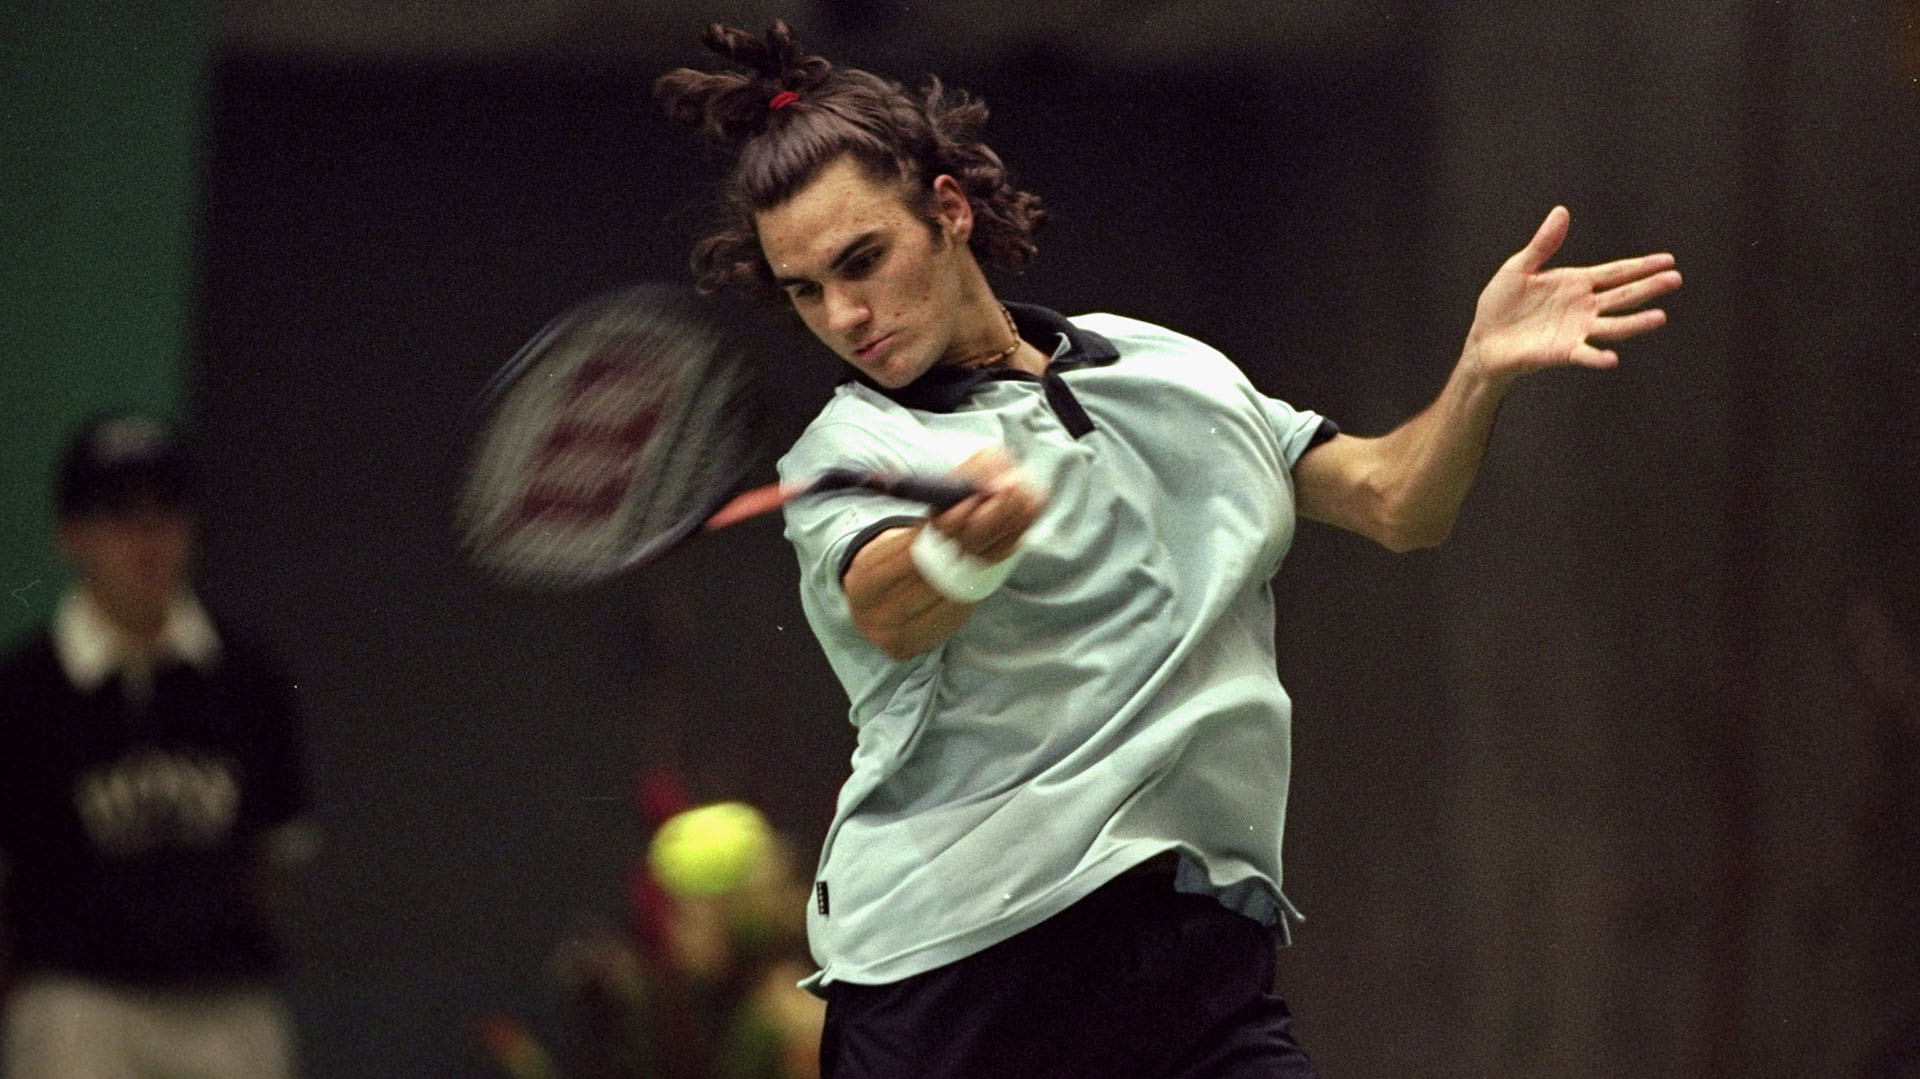 Roger dando sus primeros pasos como profesional en el 2000 (Mike Hewitt /Allsport)